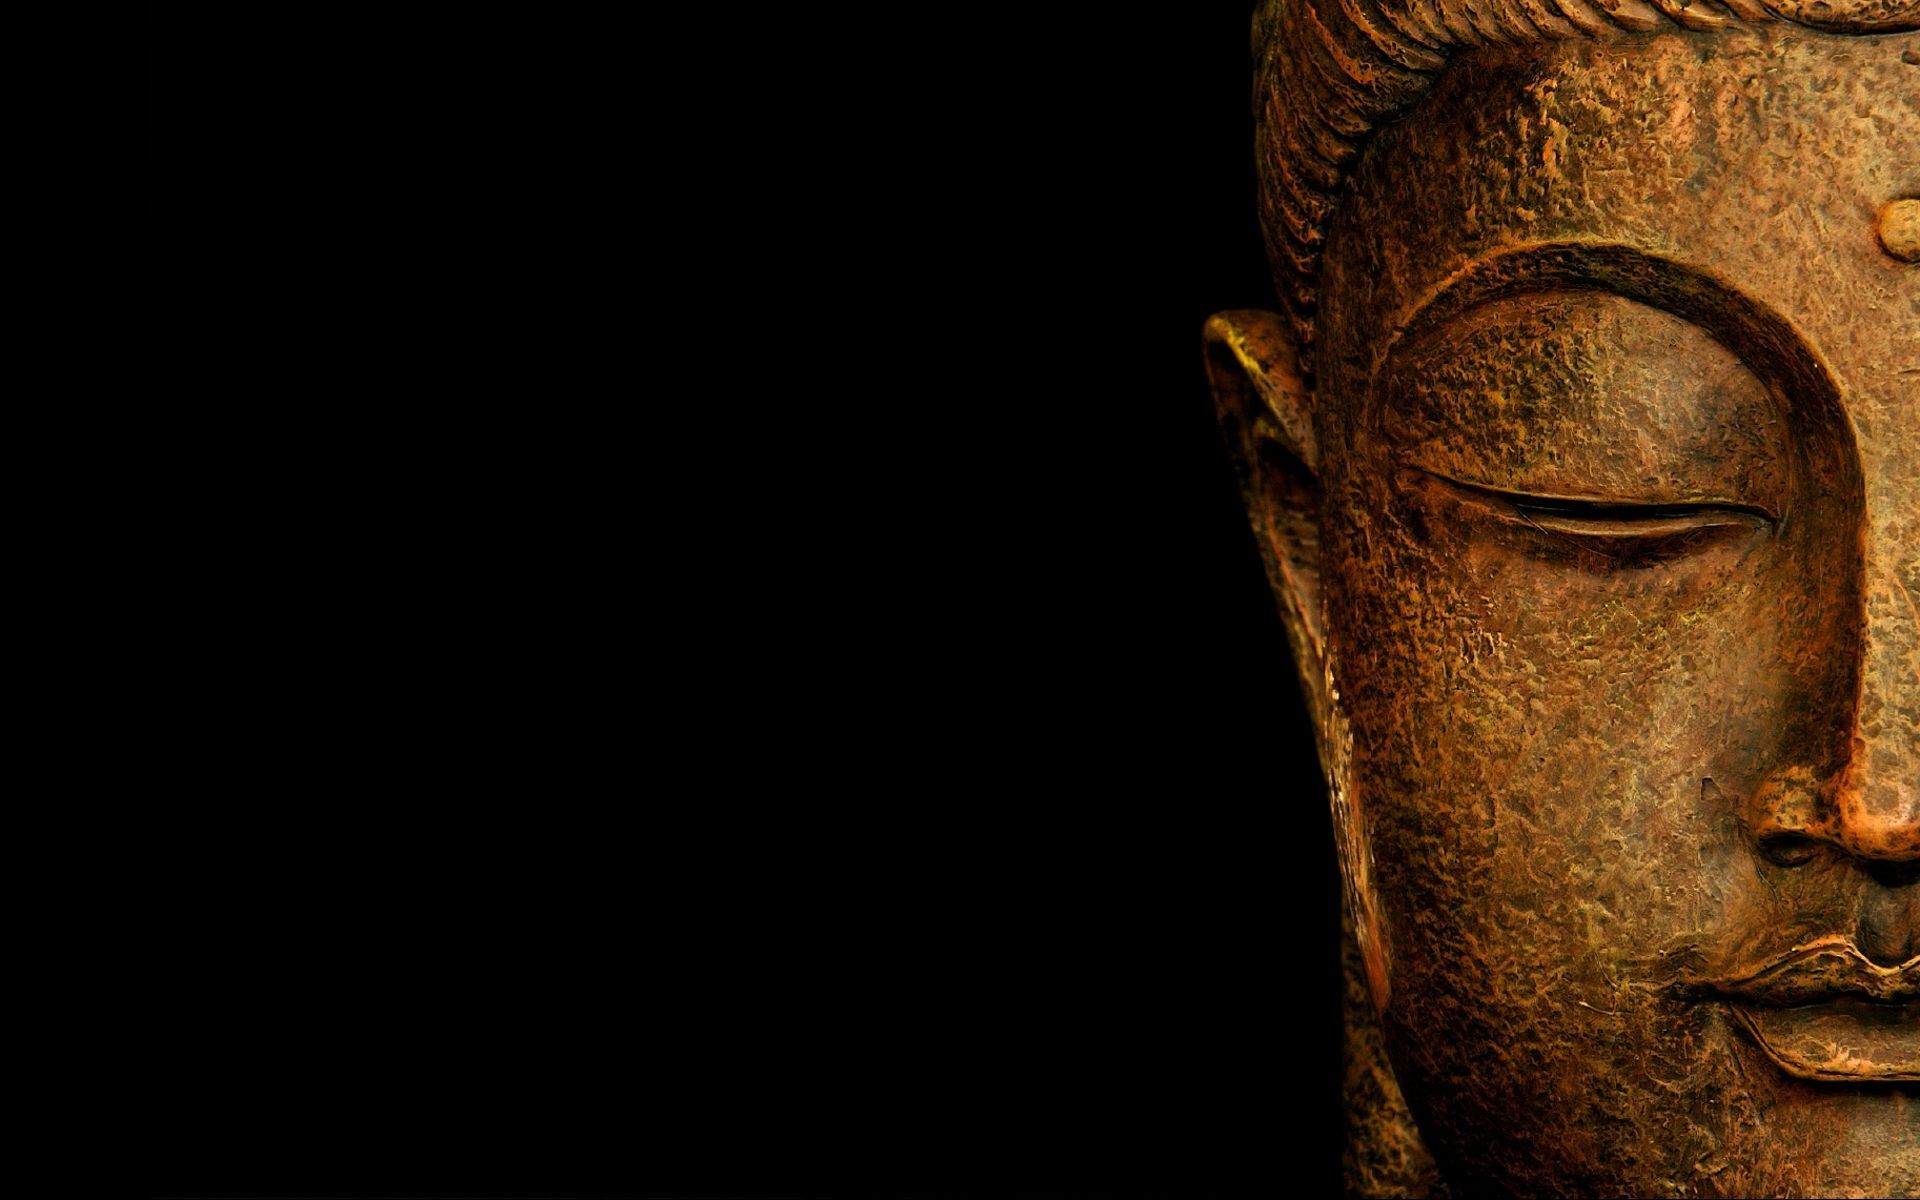 Fondos de escritorio de Buda - Los mejores fondos de escritorio de Buda